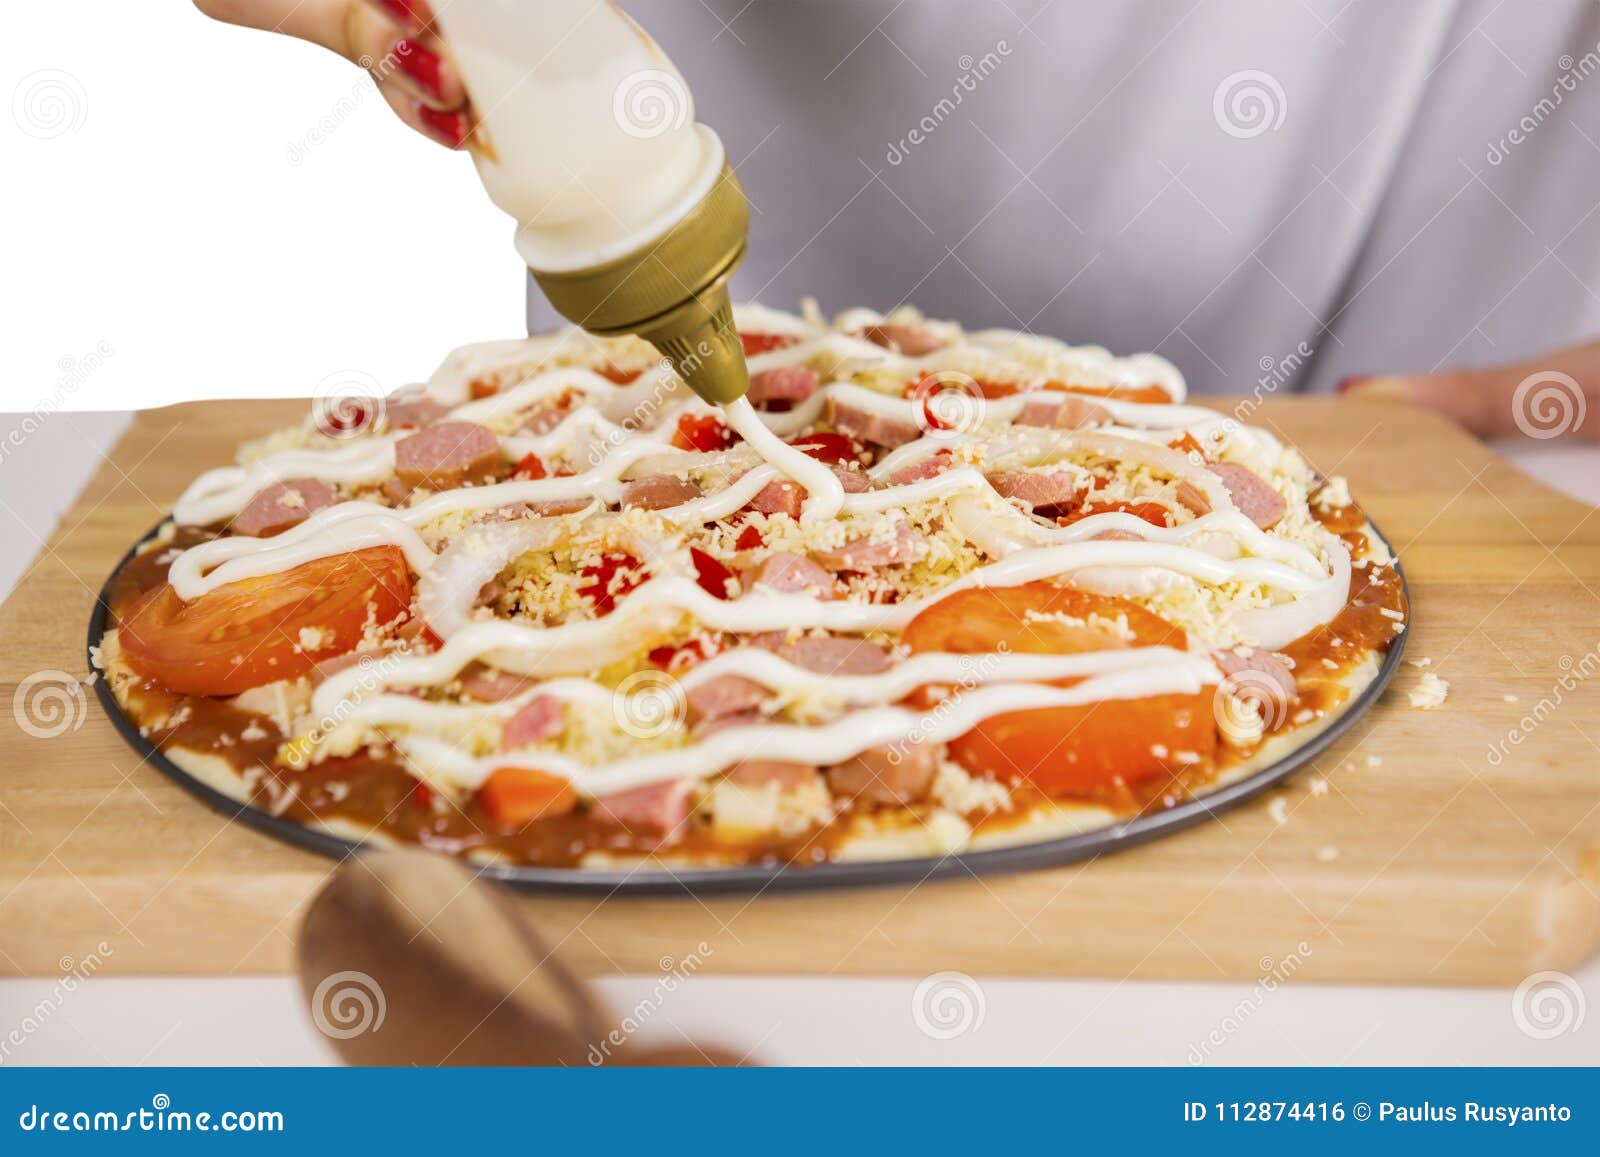 если в тесто для пиццы добавить майонез фото 61